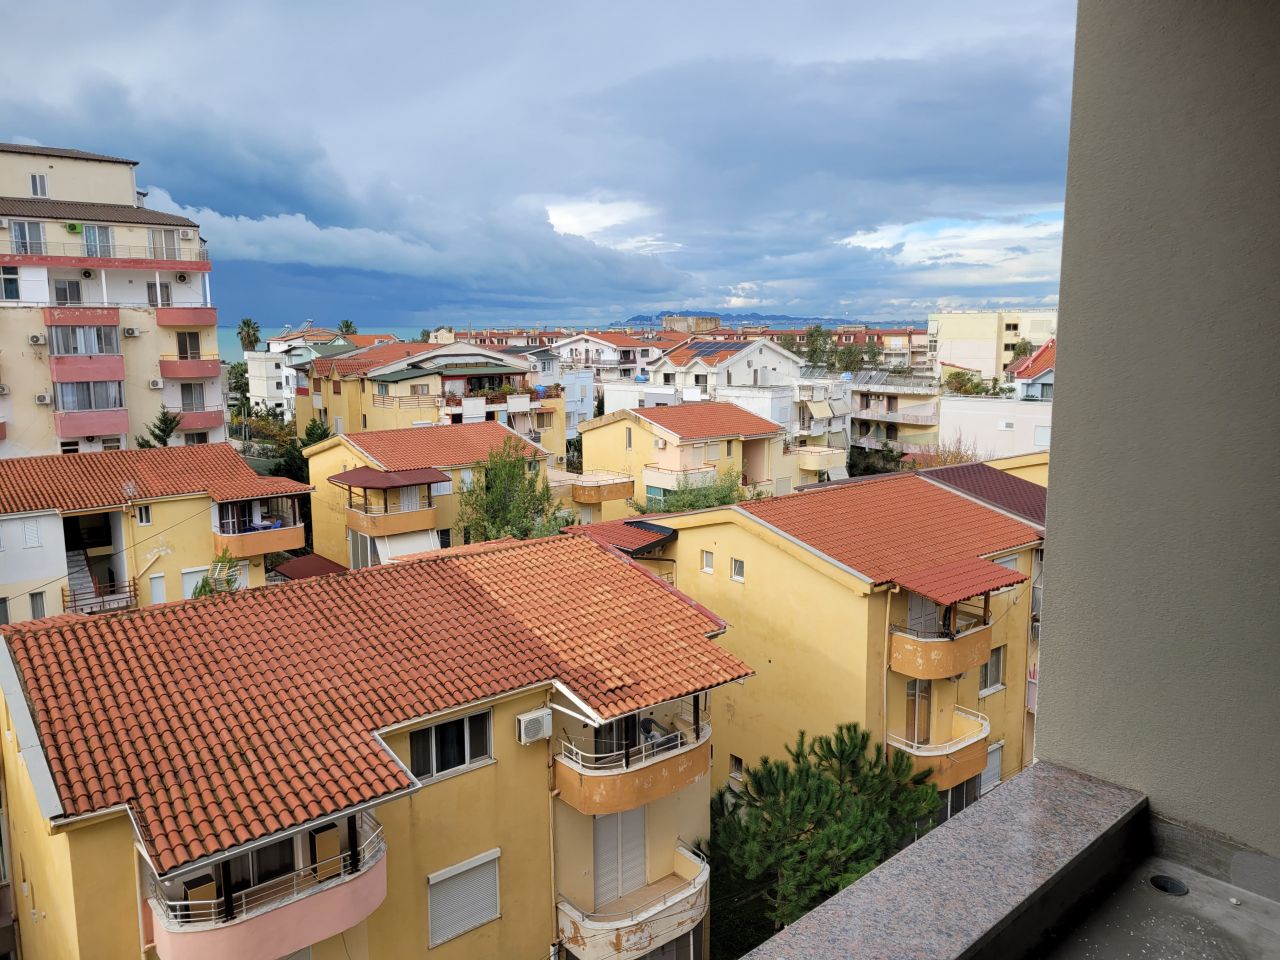 Appartamento Con Una Camera Da Letto In Vendita A Golem Durazzo Albania, Situato In Una Zona Tranquilla, Vicino Alla Spiaggia